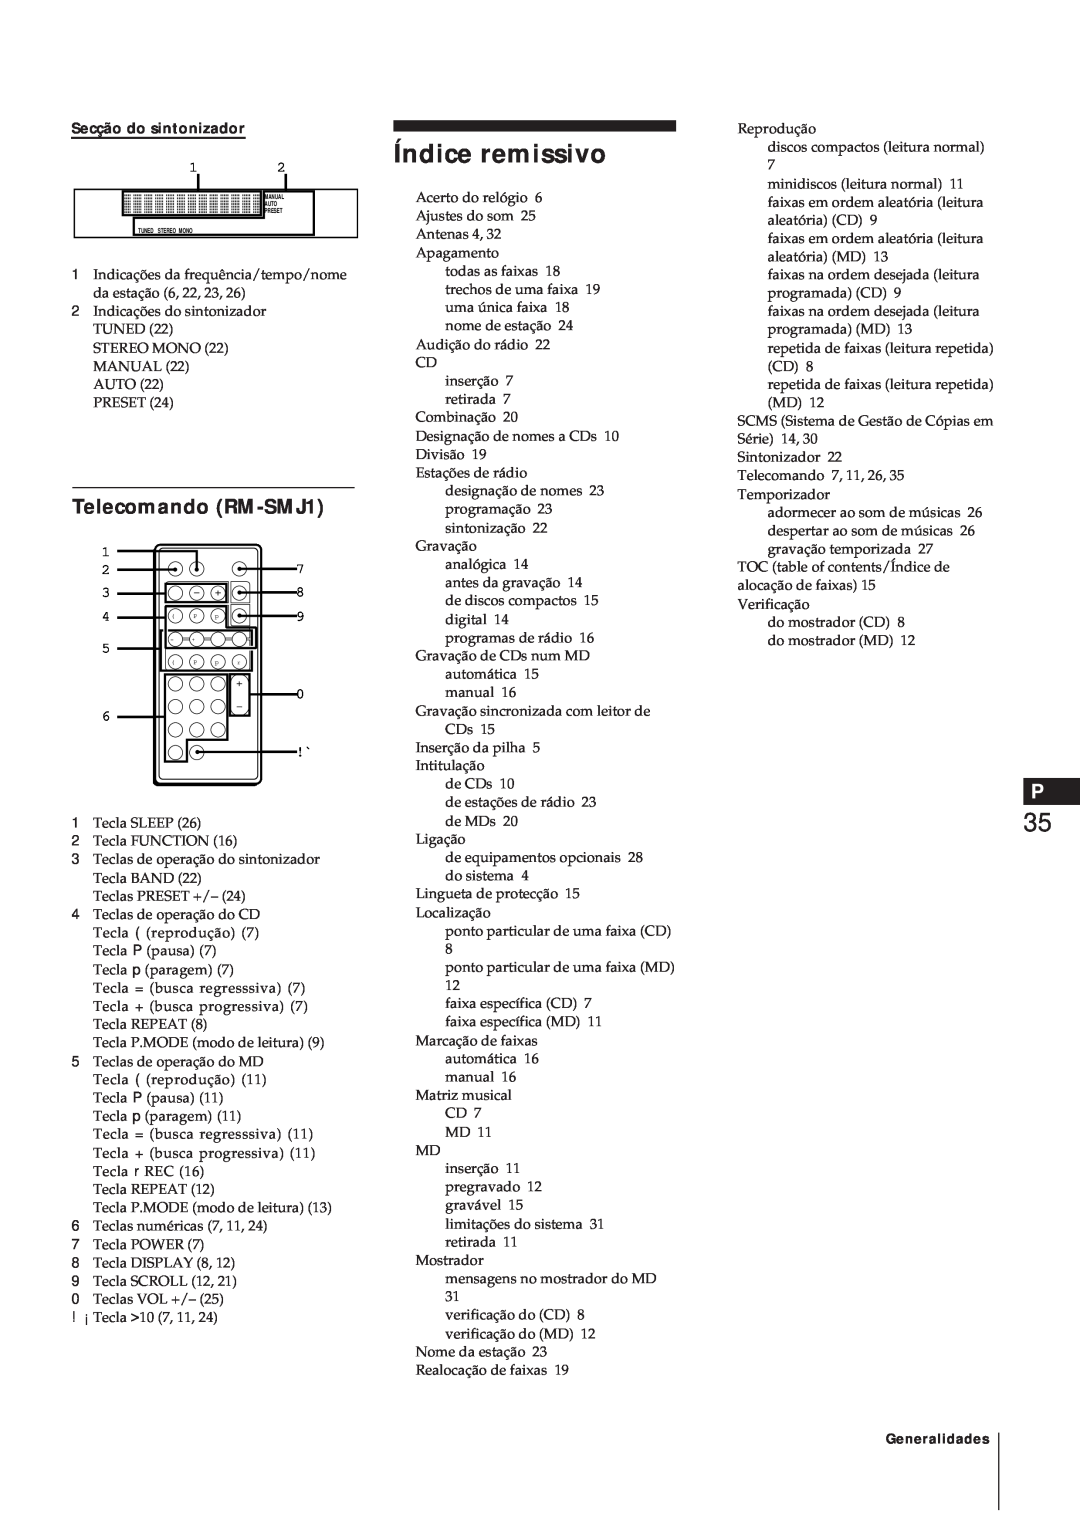 Sony MJ-L1A manual Índice remissivo, Telecomando RM-SMJ1, Secção do sintonizador 